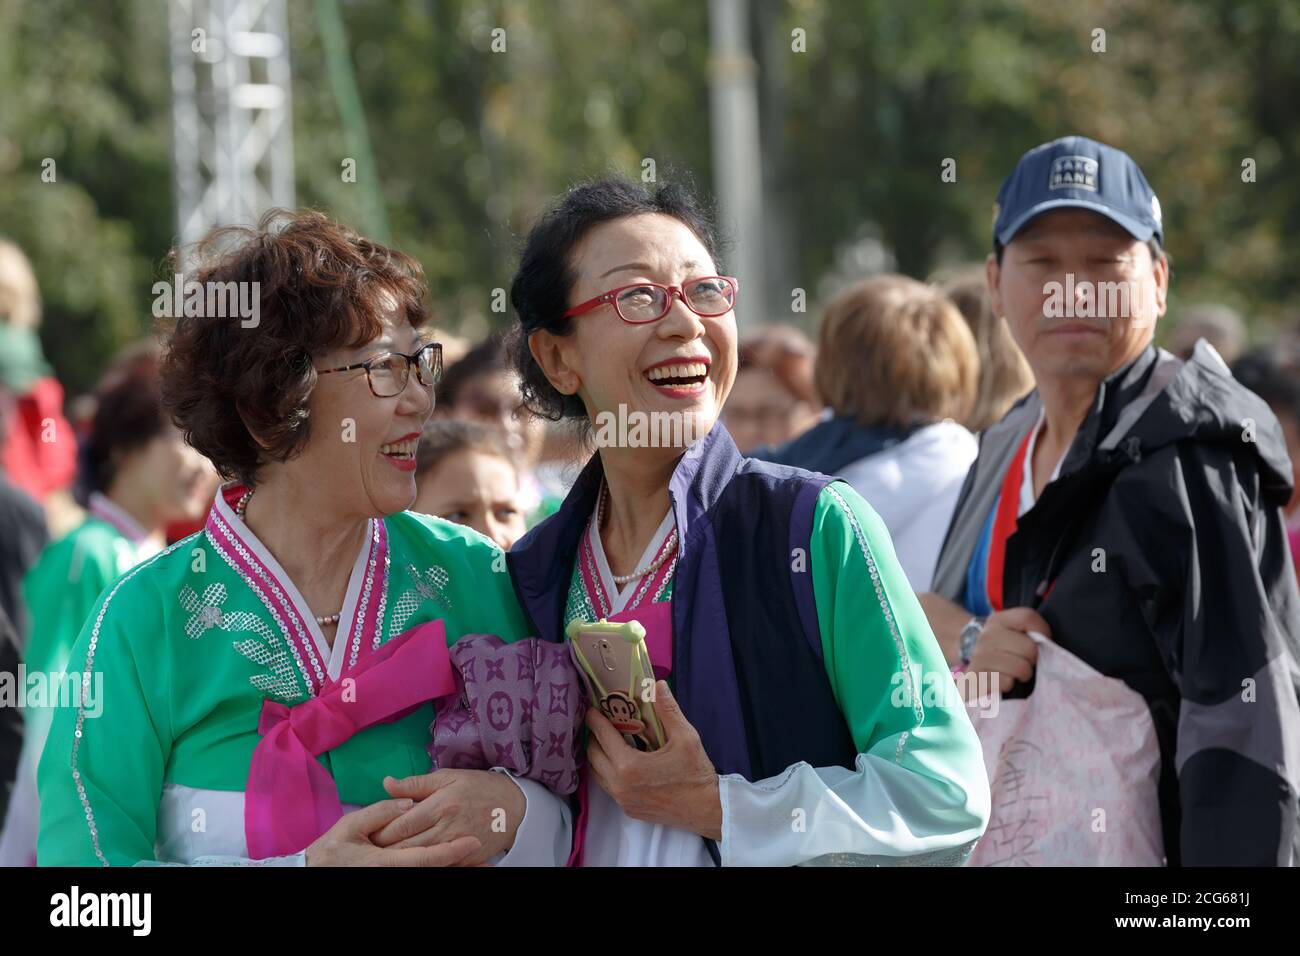 Moscou, Russie, 14 septembre 2019 : deux femmes asiatiques d'âge moyen souriantes portant des lunettes et des costumes brillants au festival chinois de VDNH Banque D'Images